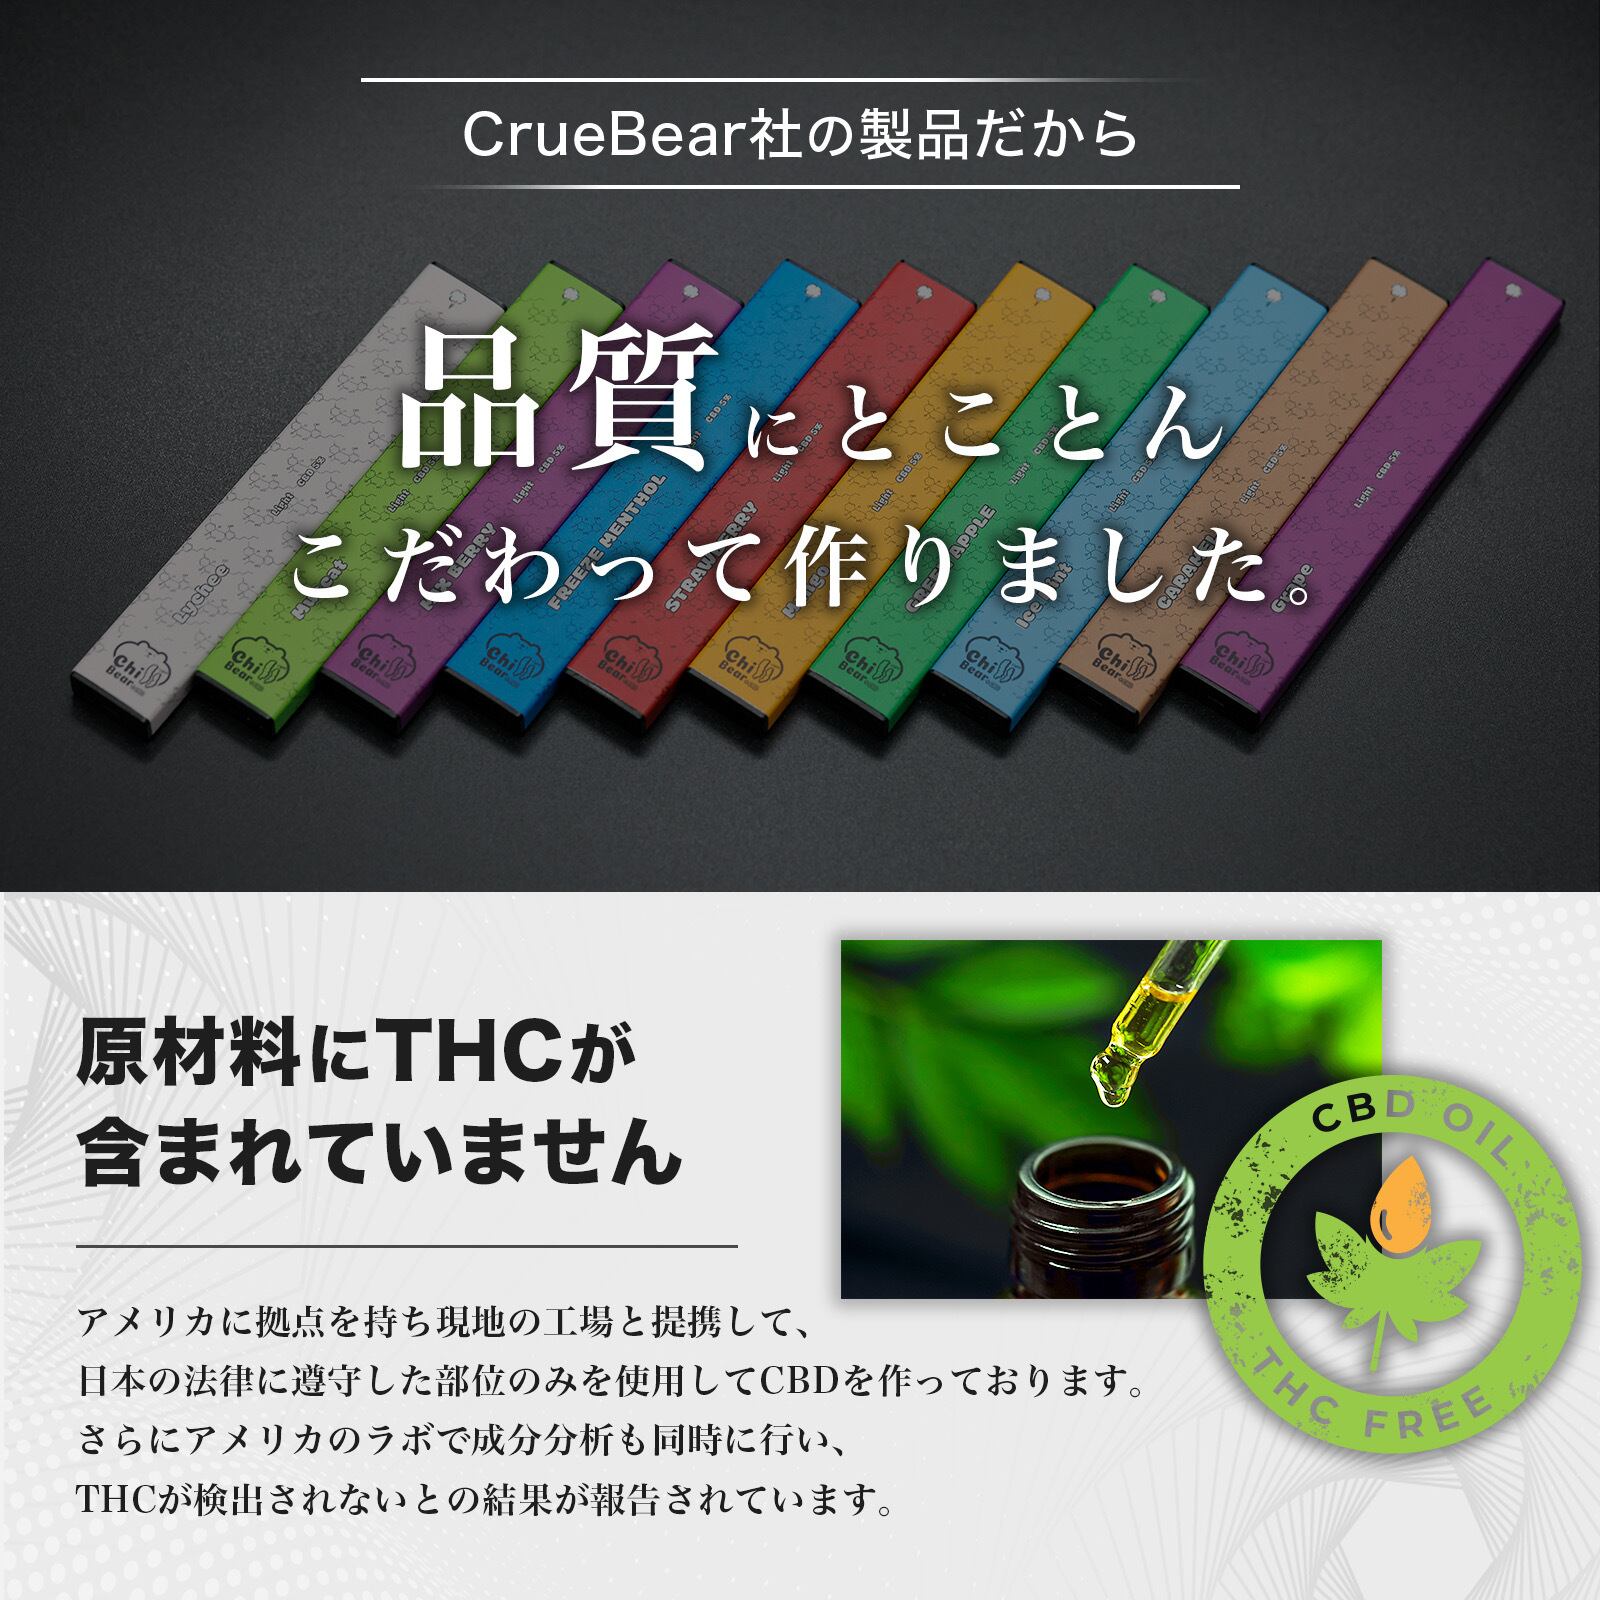 ChillBear +CBD 5%【60mg】アイスミント味 | CureBear Shop